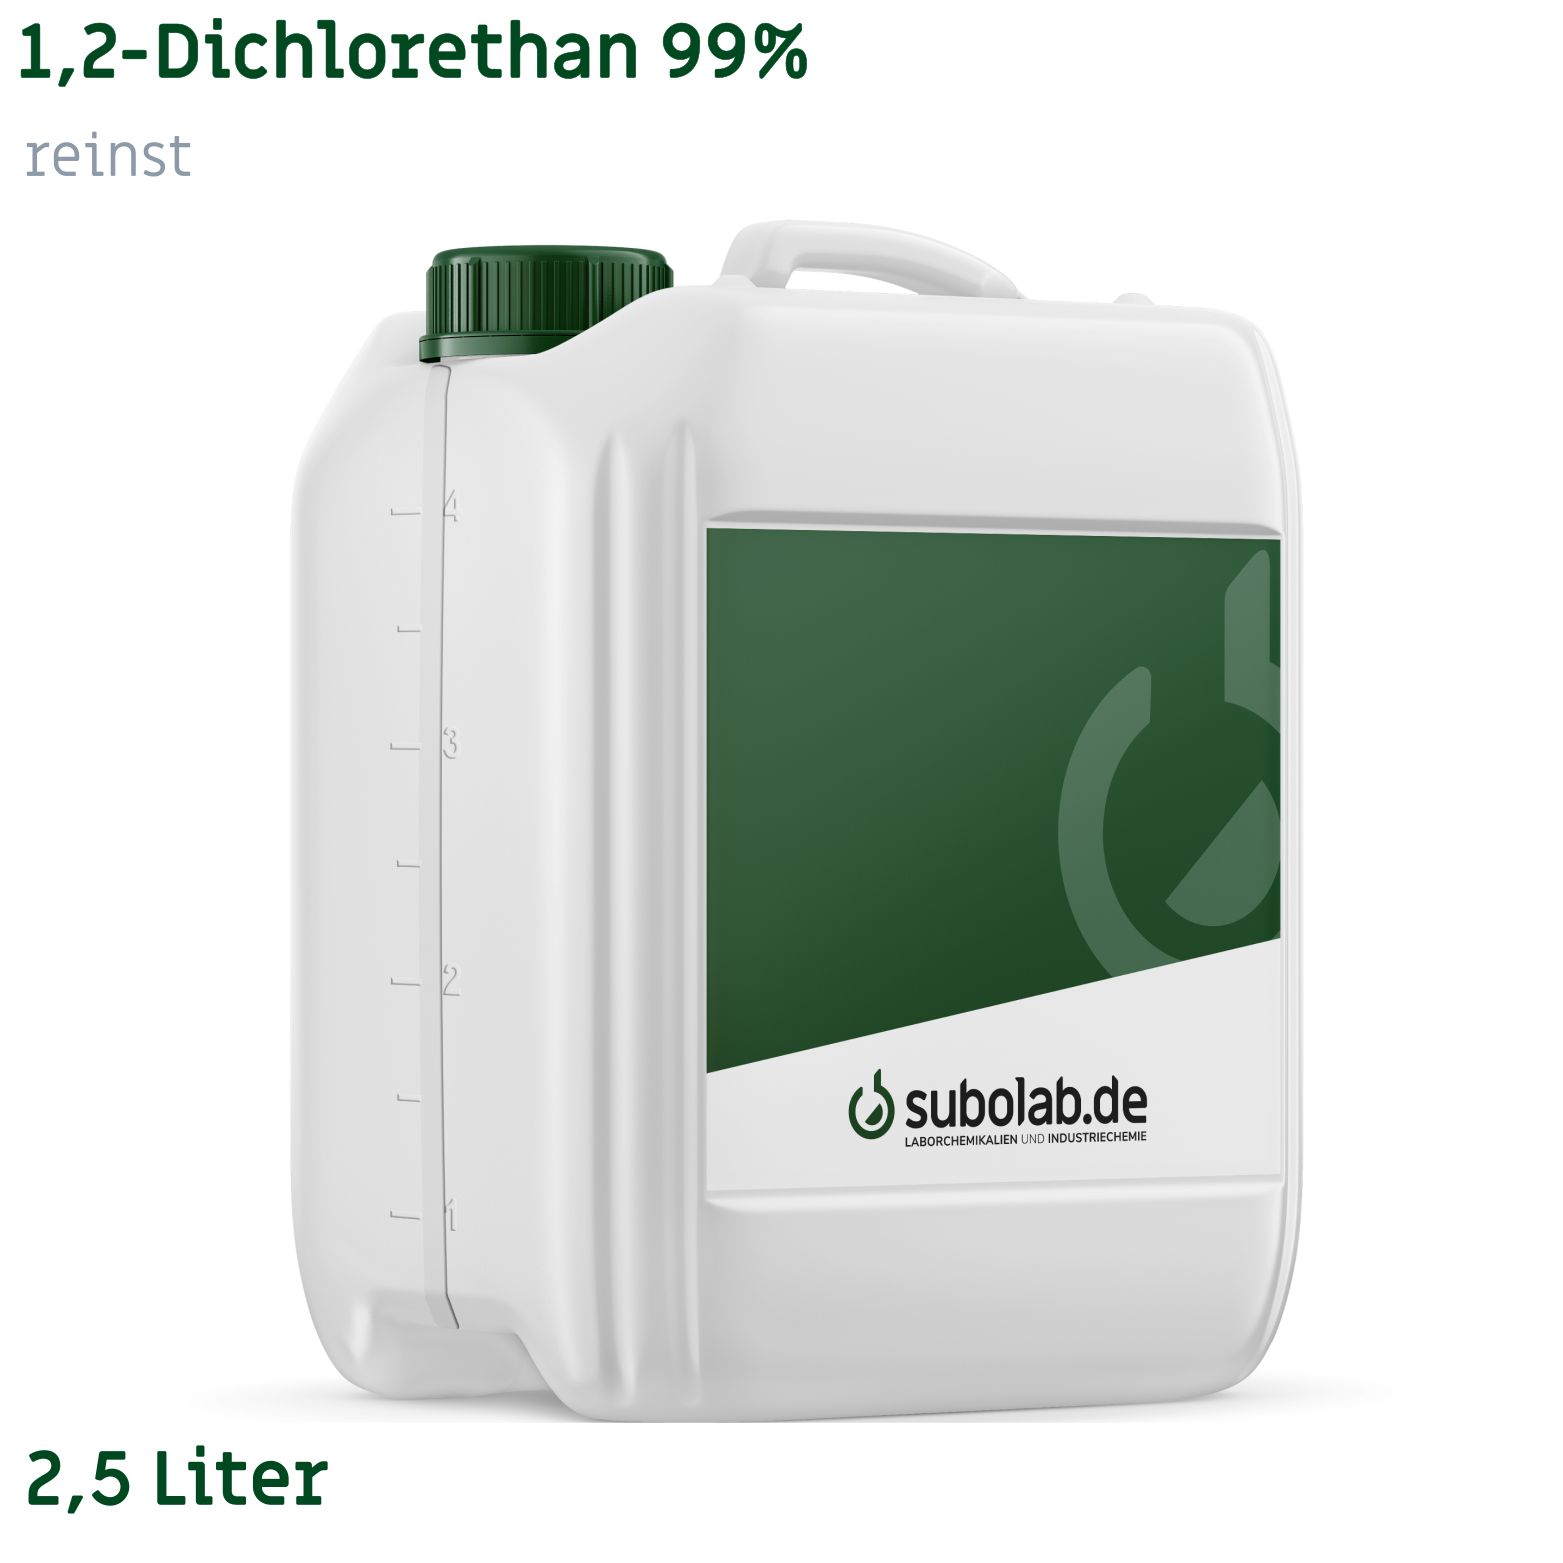 Bild von 1,2-Dichlorethan 99% reinst (2,5 Liter)